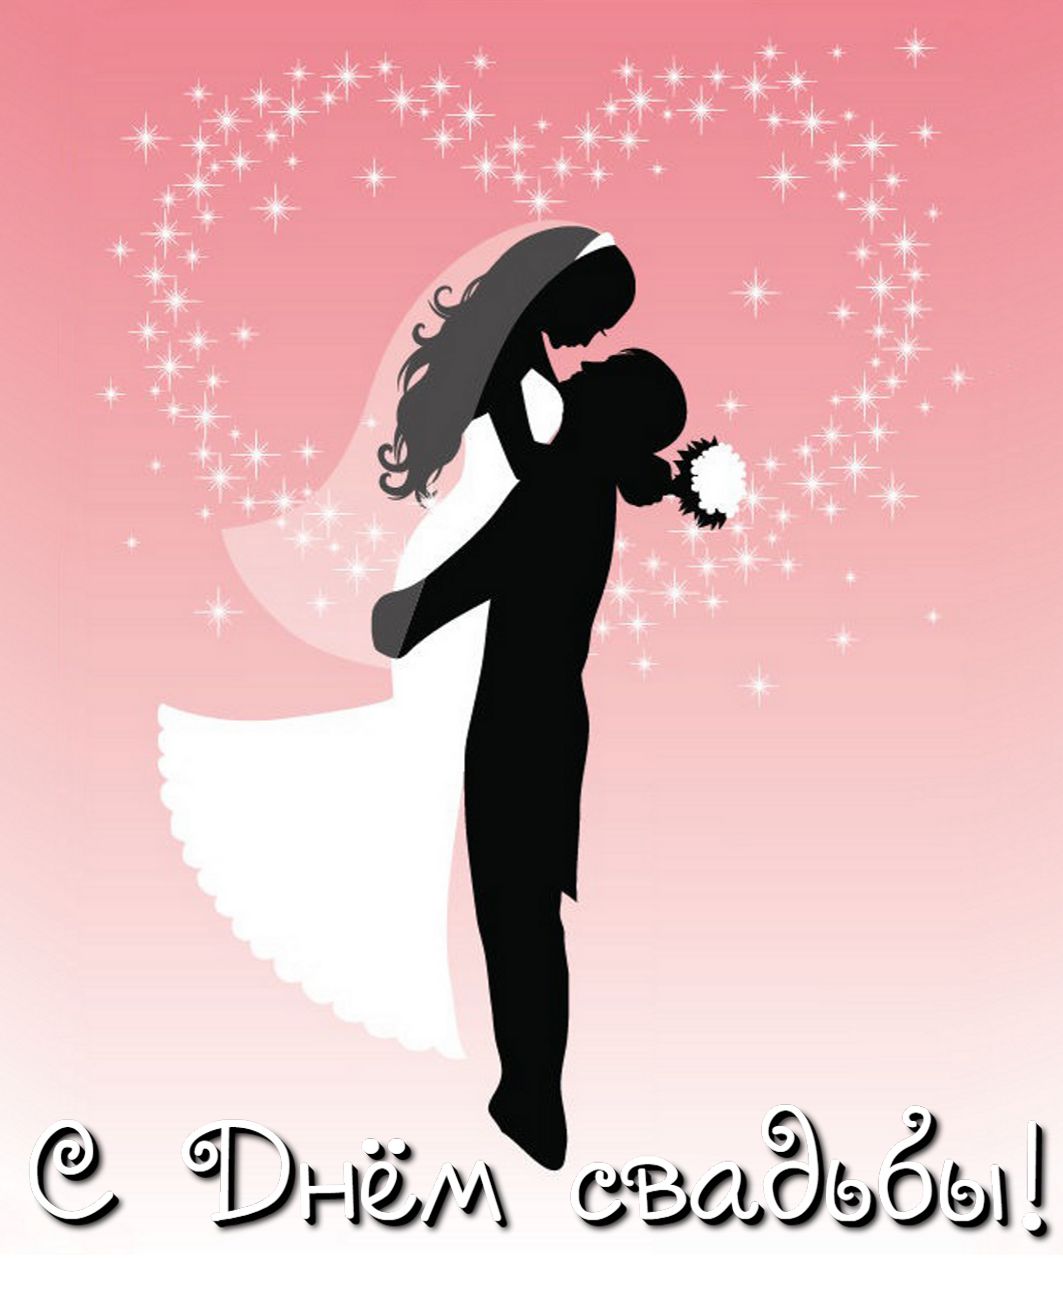 открытка с днем свадьбы - силуэт влюбленной пары на розовом фоне